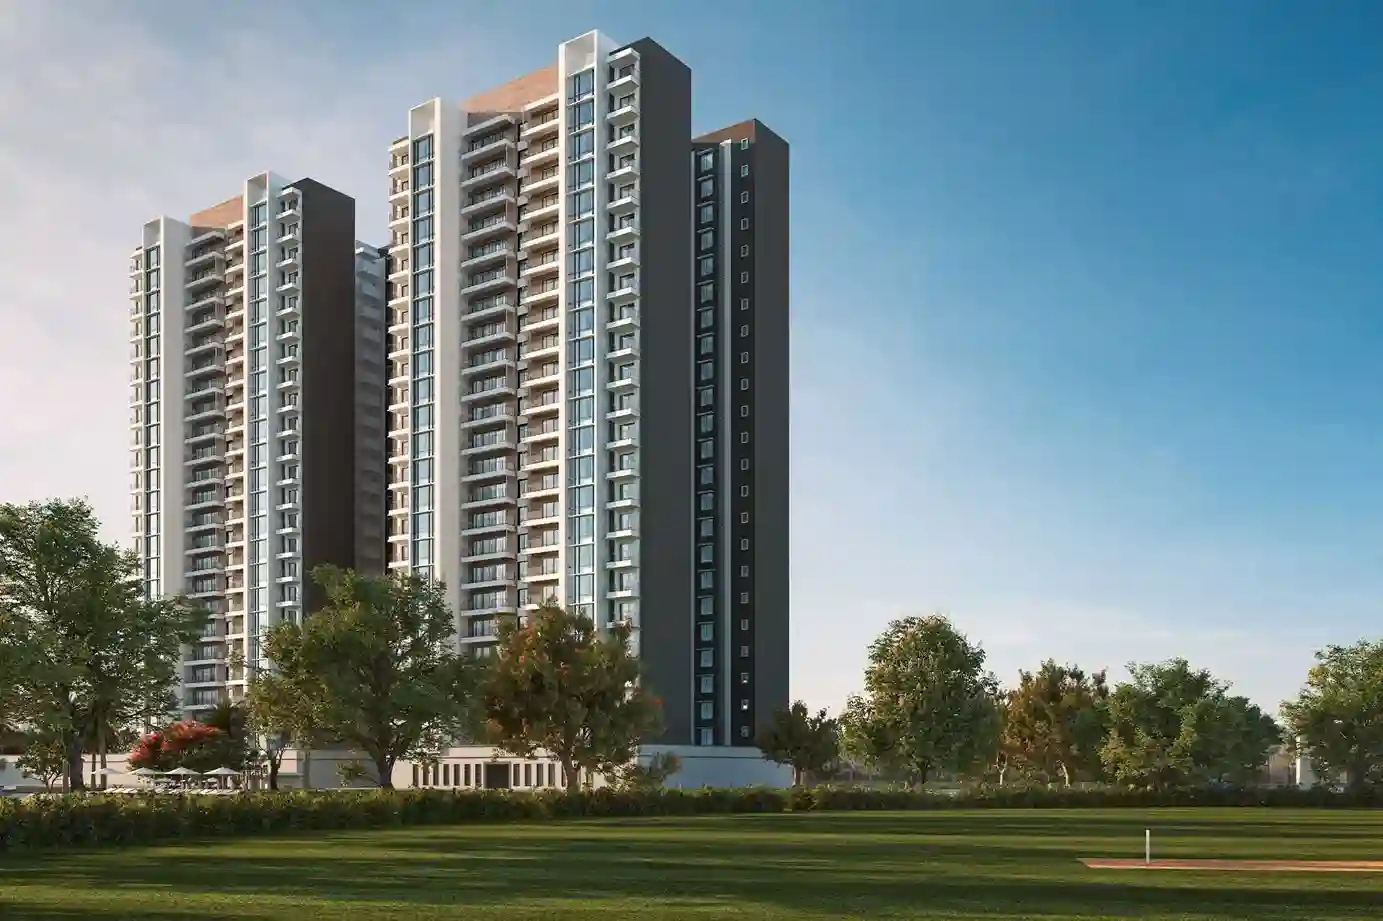 sobha-city-banner-2-onkar-real-estate-solution